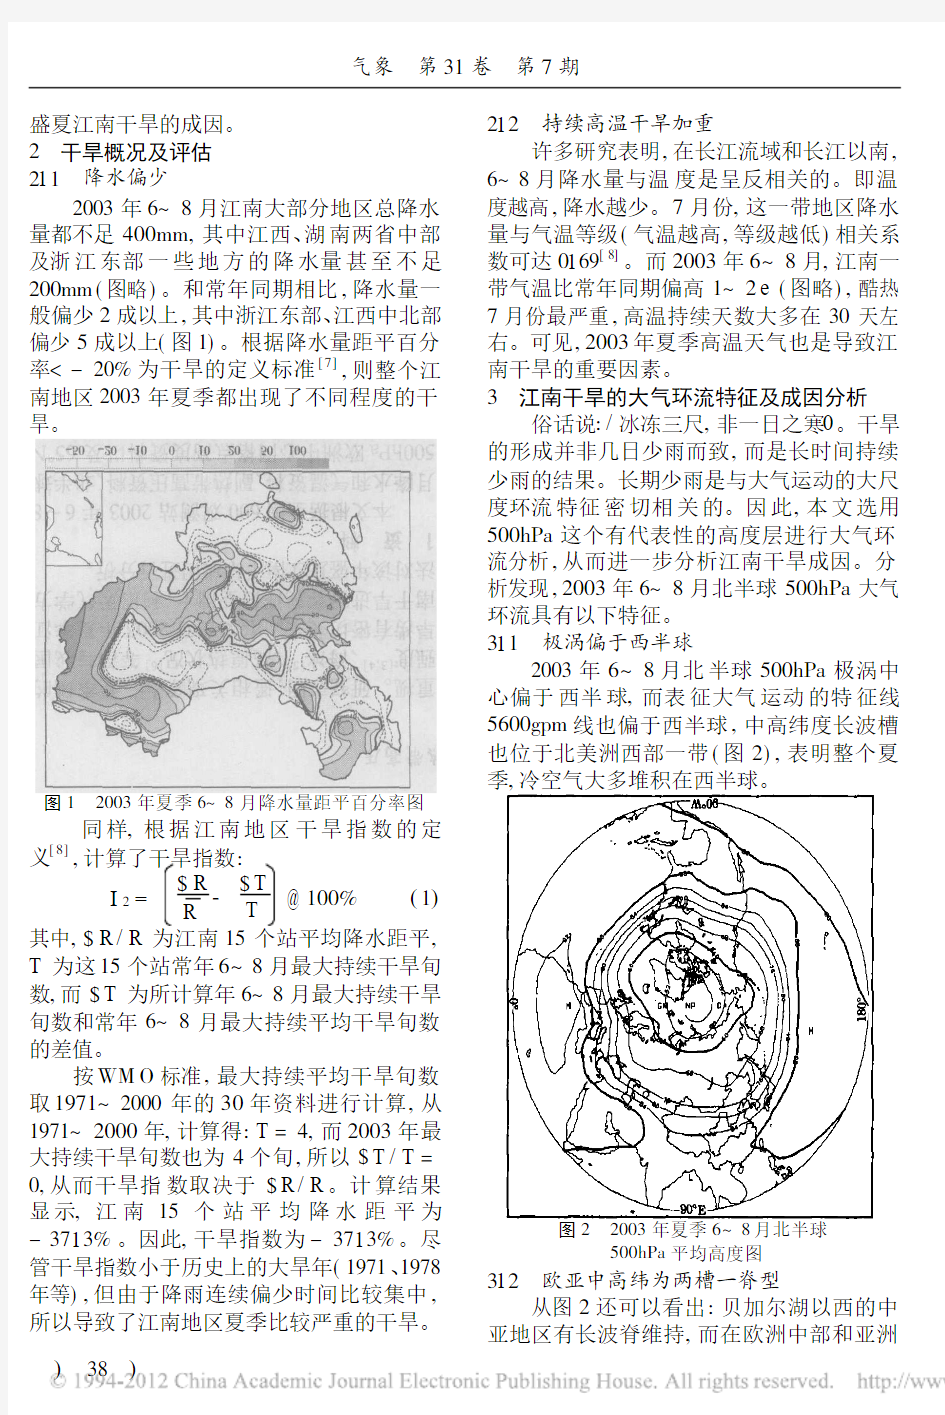 2003年江南干旱的成因分析